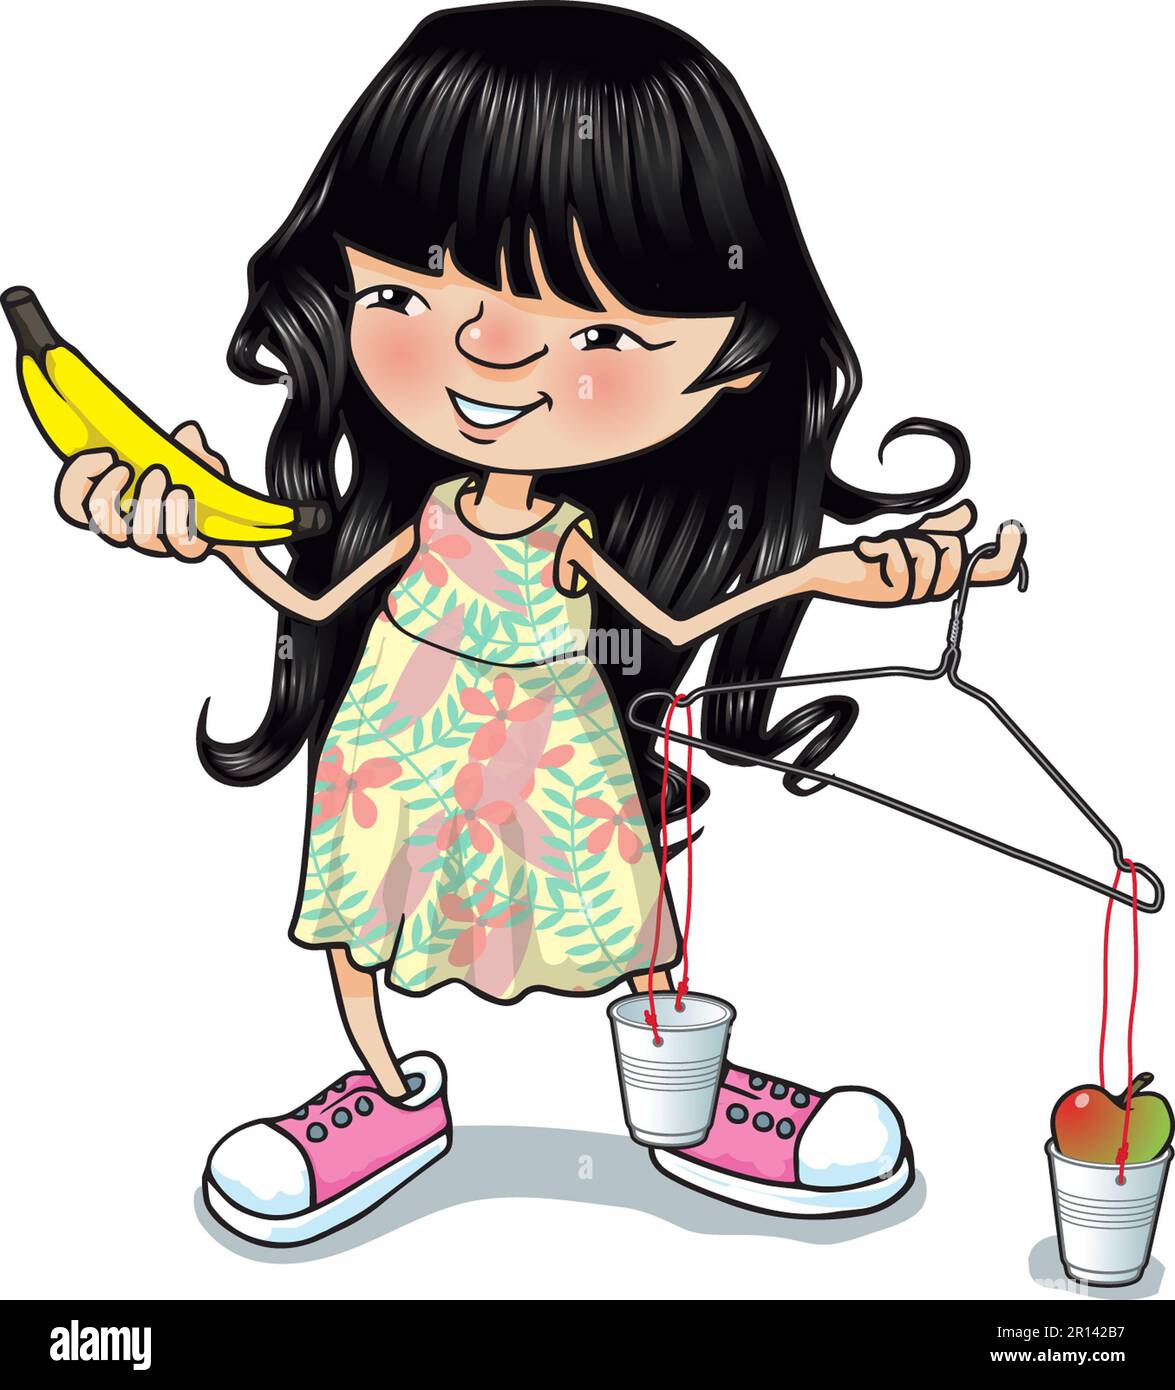 Illustrazione d'arte della ragazza giovane che tiene una bilancia appendiabiti, pesando mele e banane, semplice bilancia fatta in casa per il confronto della pesatura di prova Foto Stock